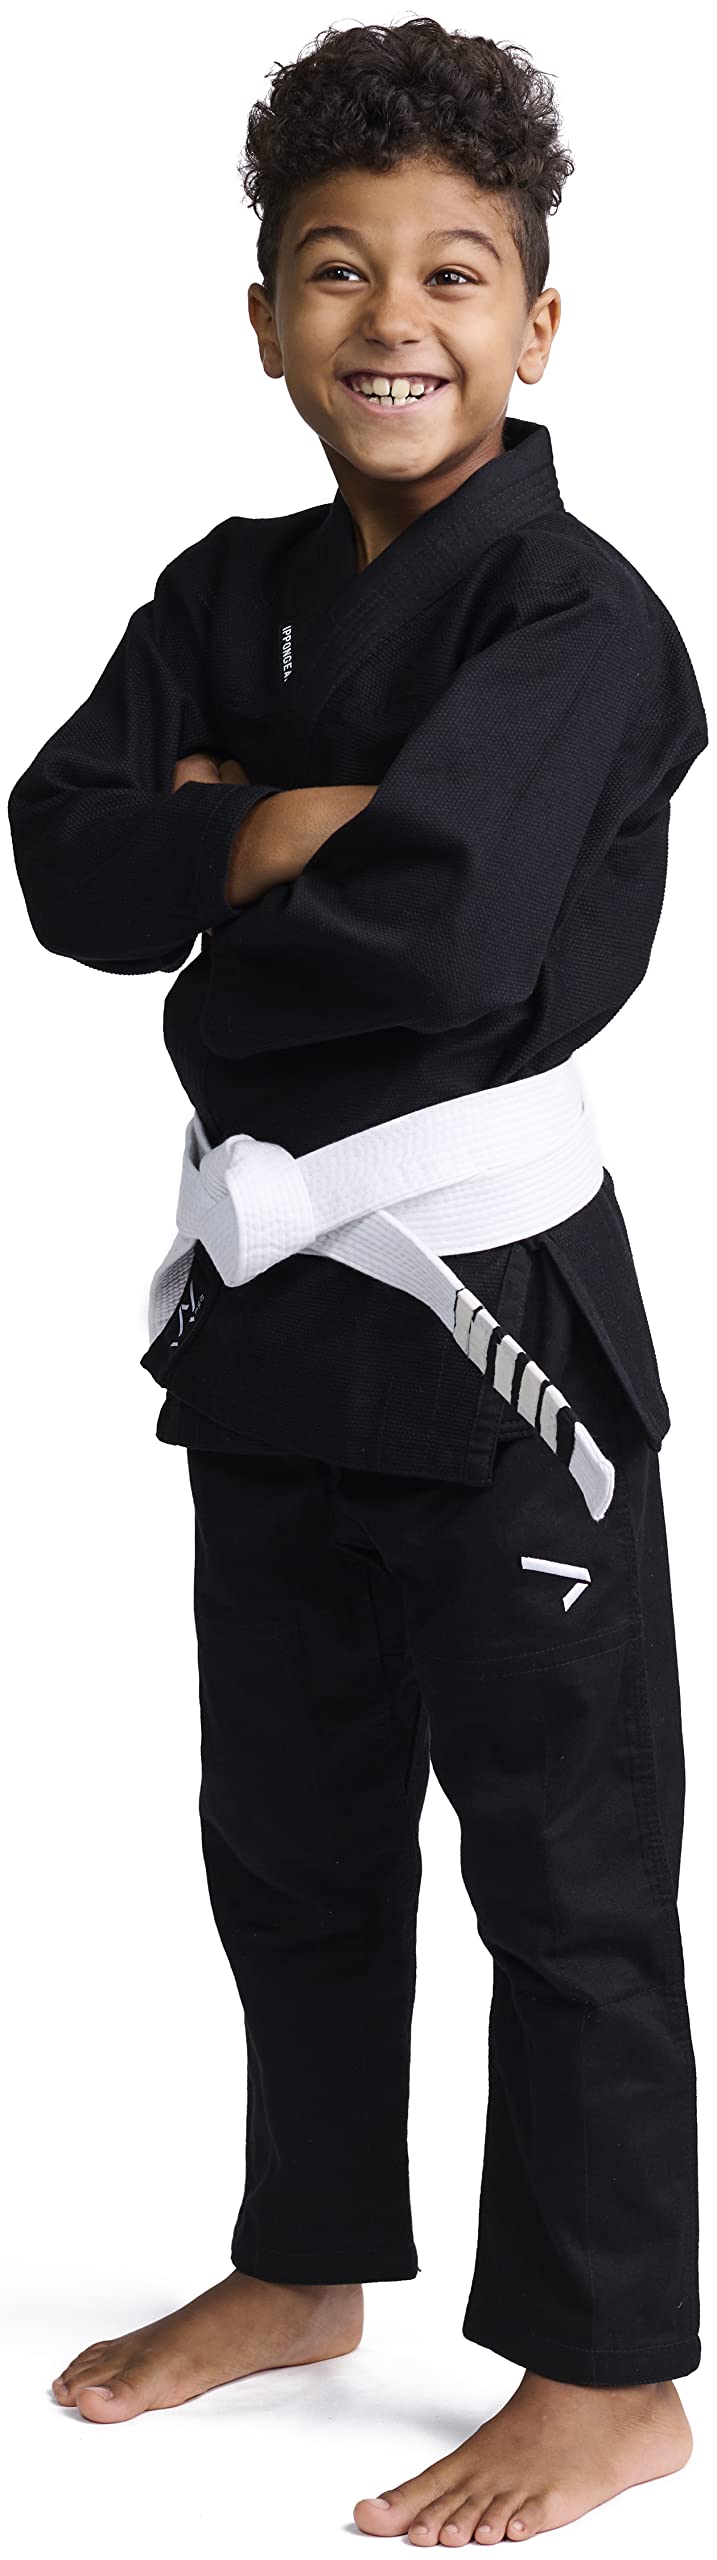 IPPONGEAR Brazilian Jiu Jitsu Kinder/Einsteiger Anzug inkl weißem Gürtel [M2 I Pearl-Weave Material I 350gr/m² Stoffdichte I Reißfest] schwarz